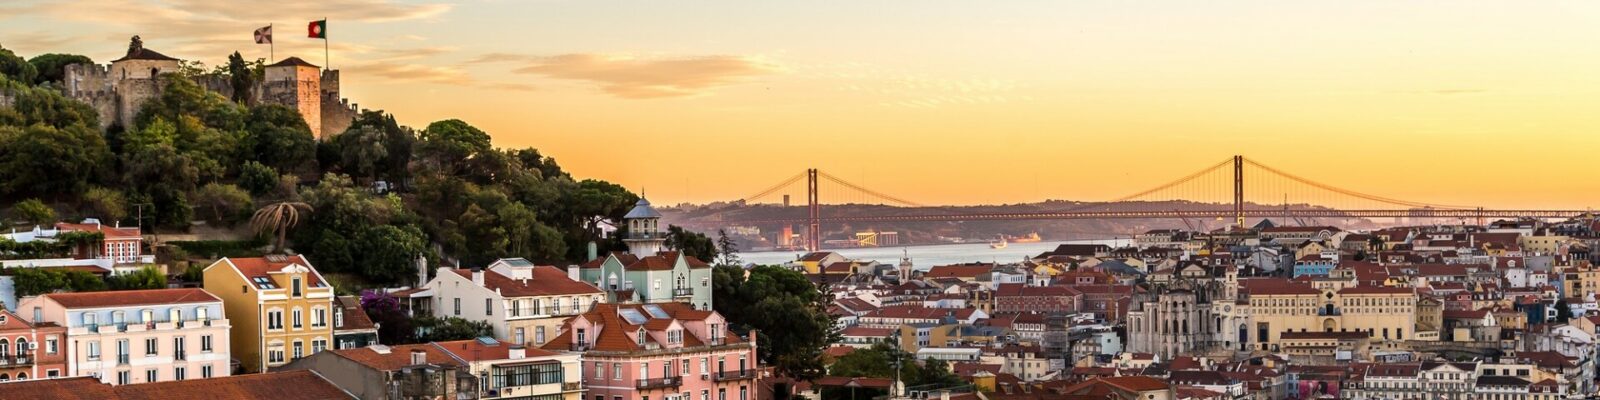 48 Hours In Lisbon